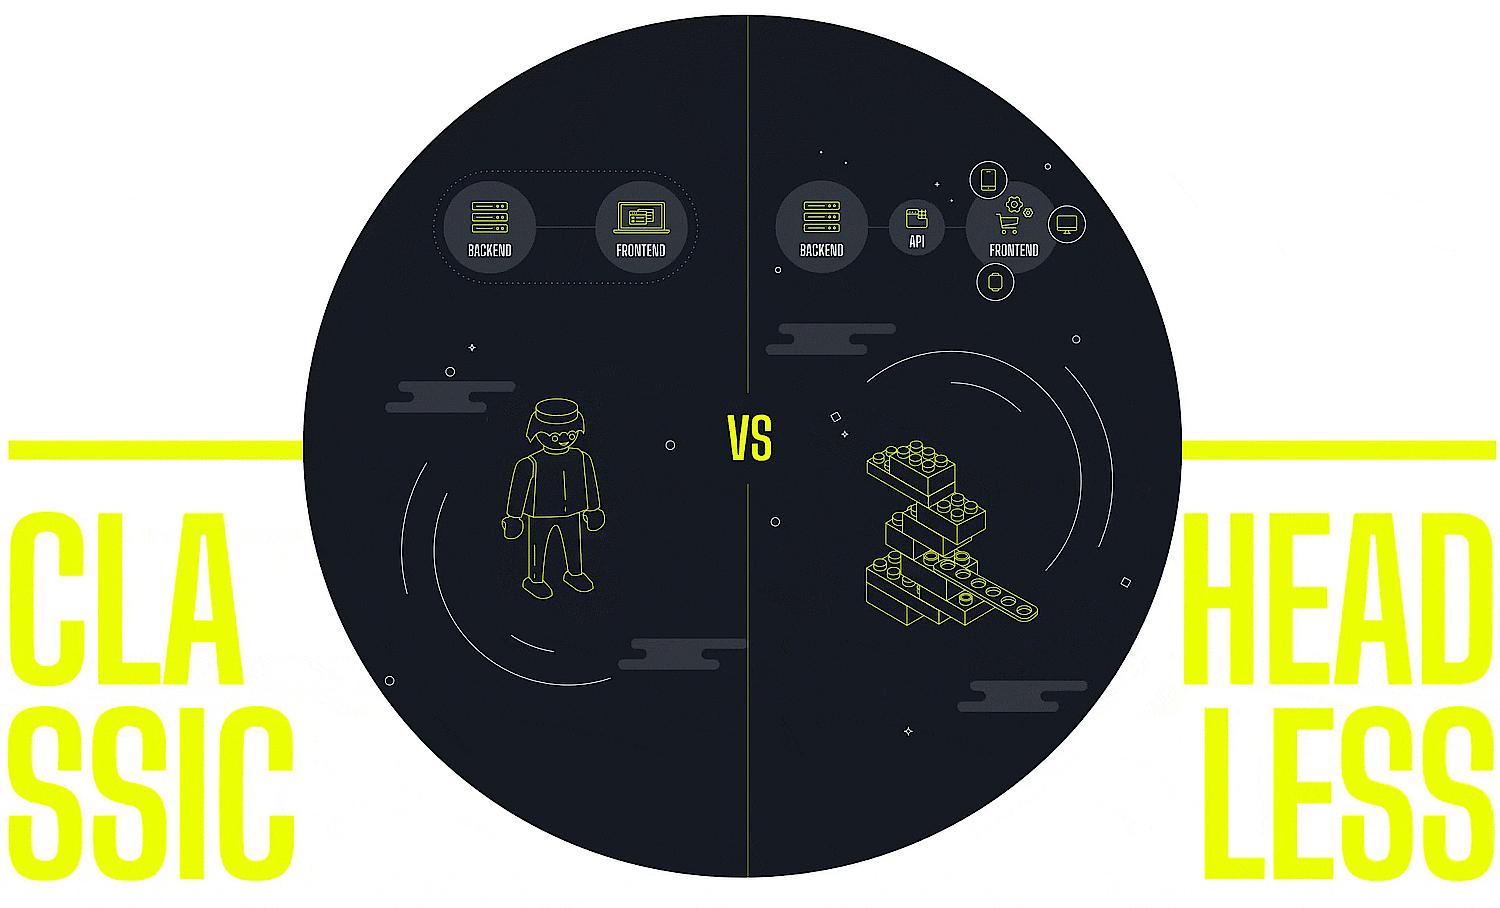 Zu sehen ist eine Infografik zu Headless Commerce die Frontend und Backend vergleicht